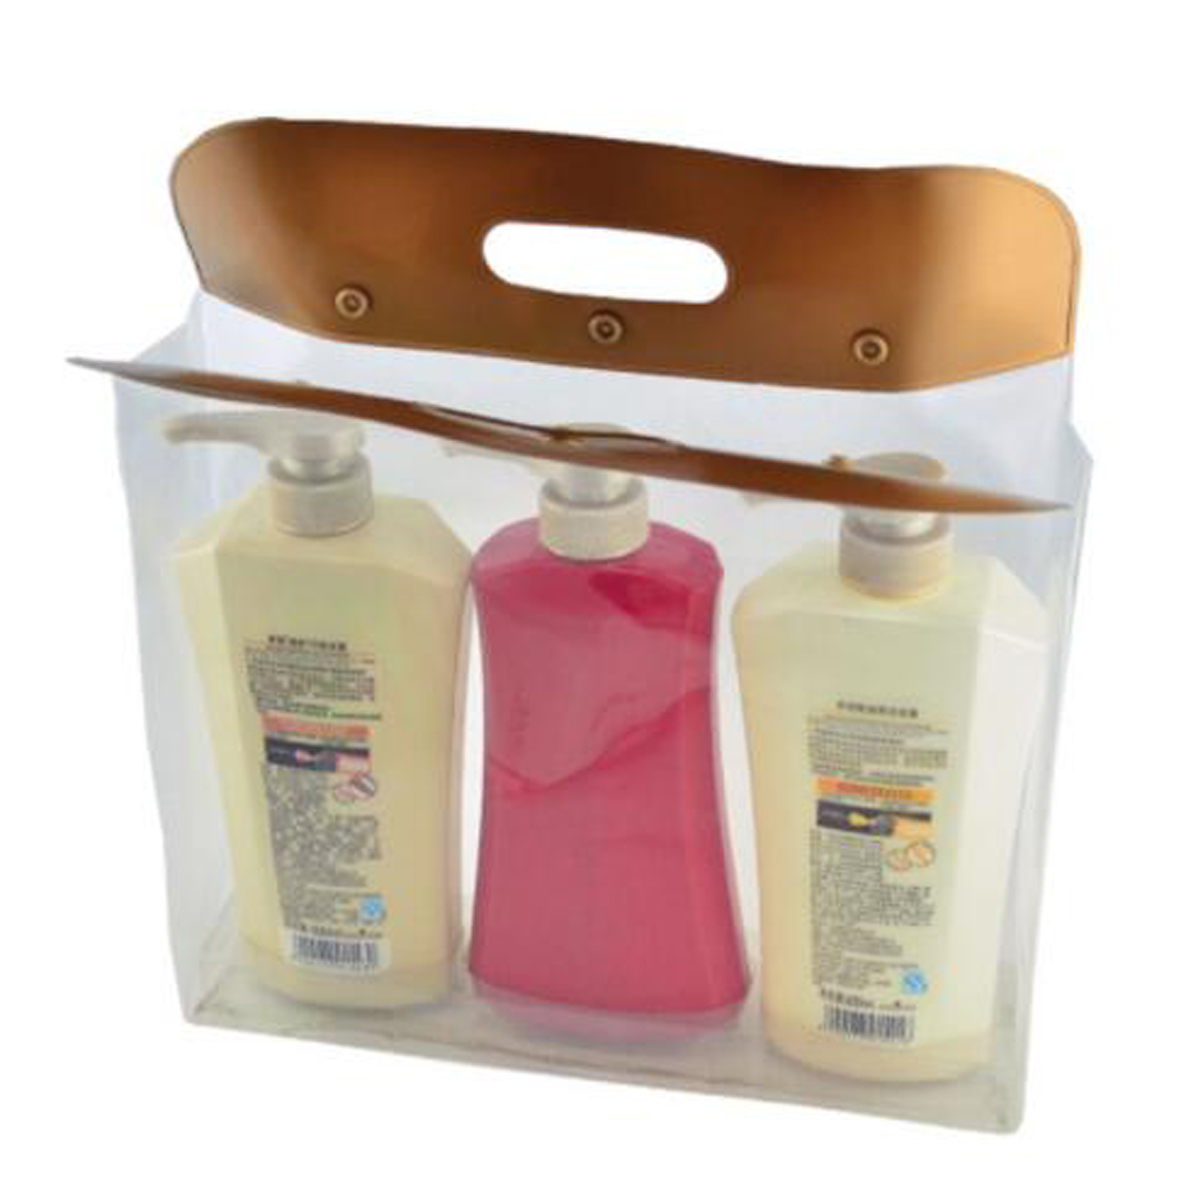 GL-ELY1234 Body Wash Shampoo Set Bag